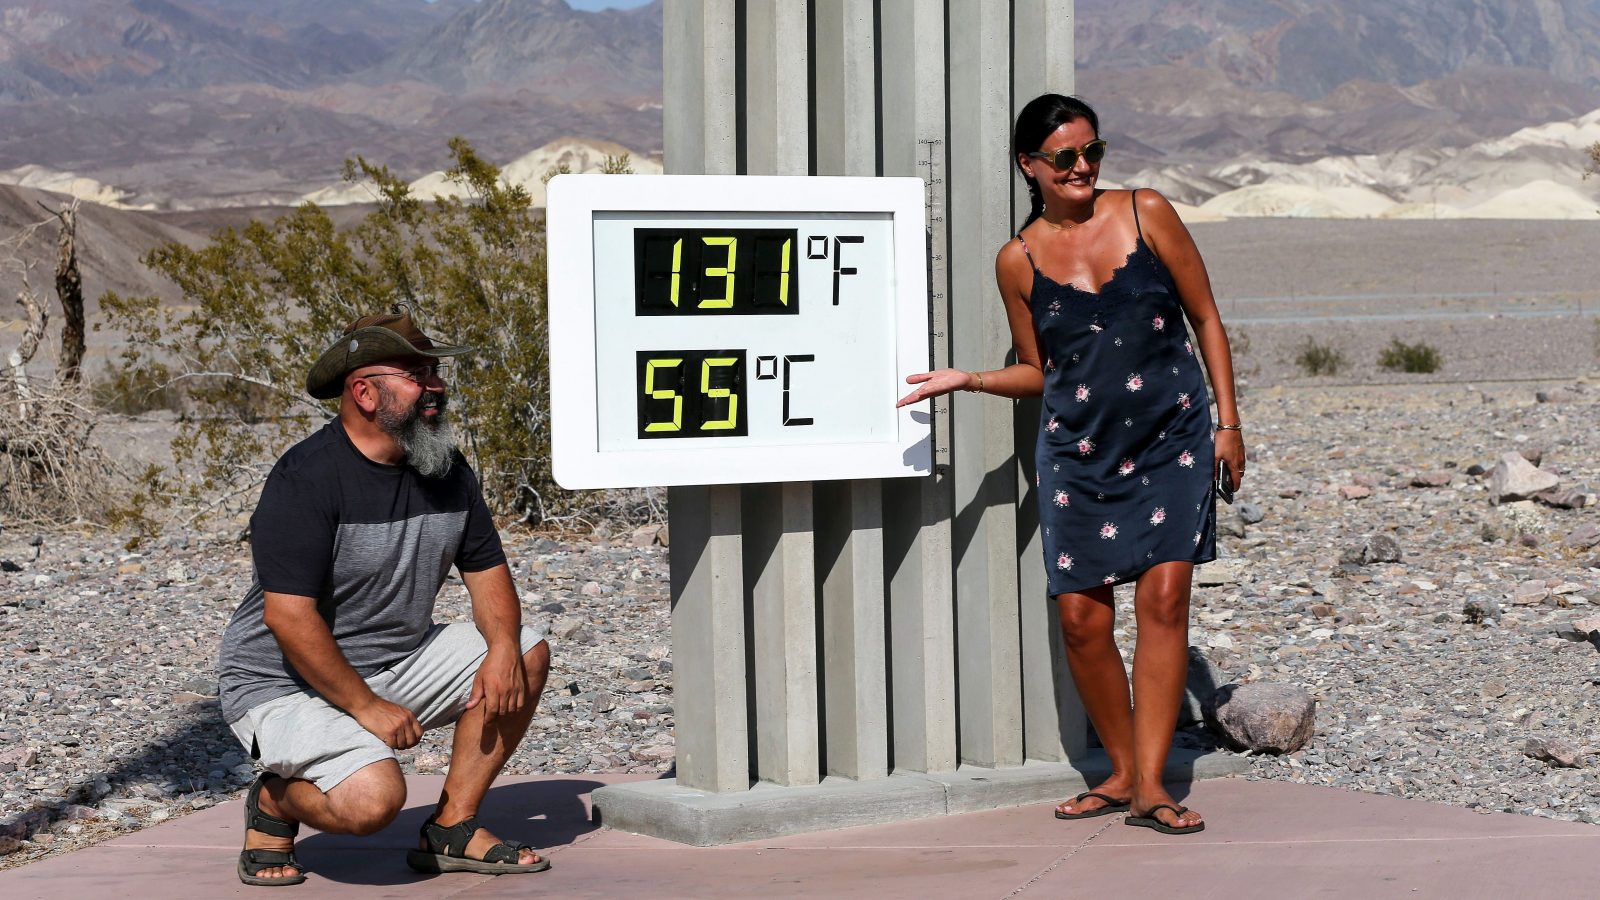 Death Valley Temperature E1607118240242 